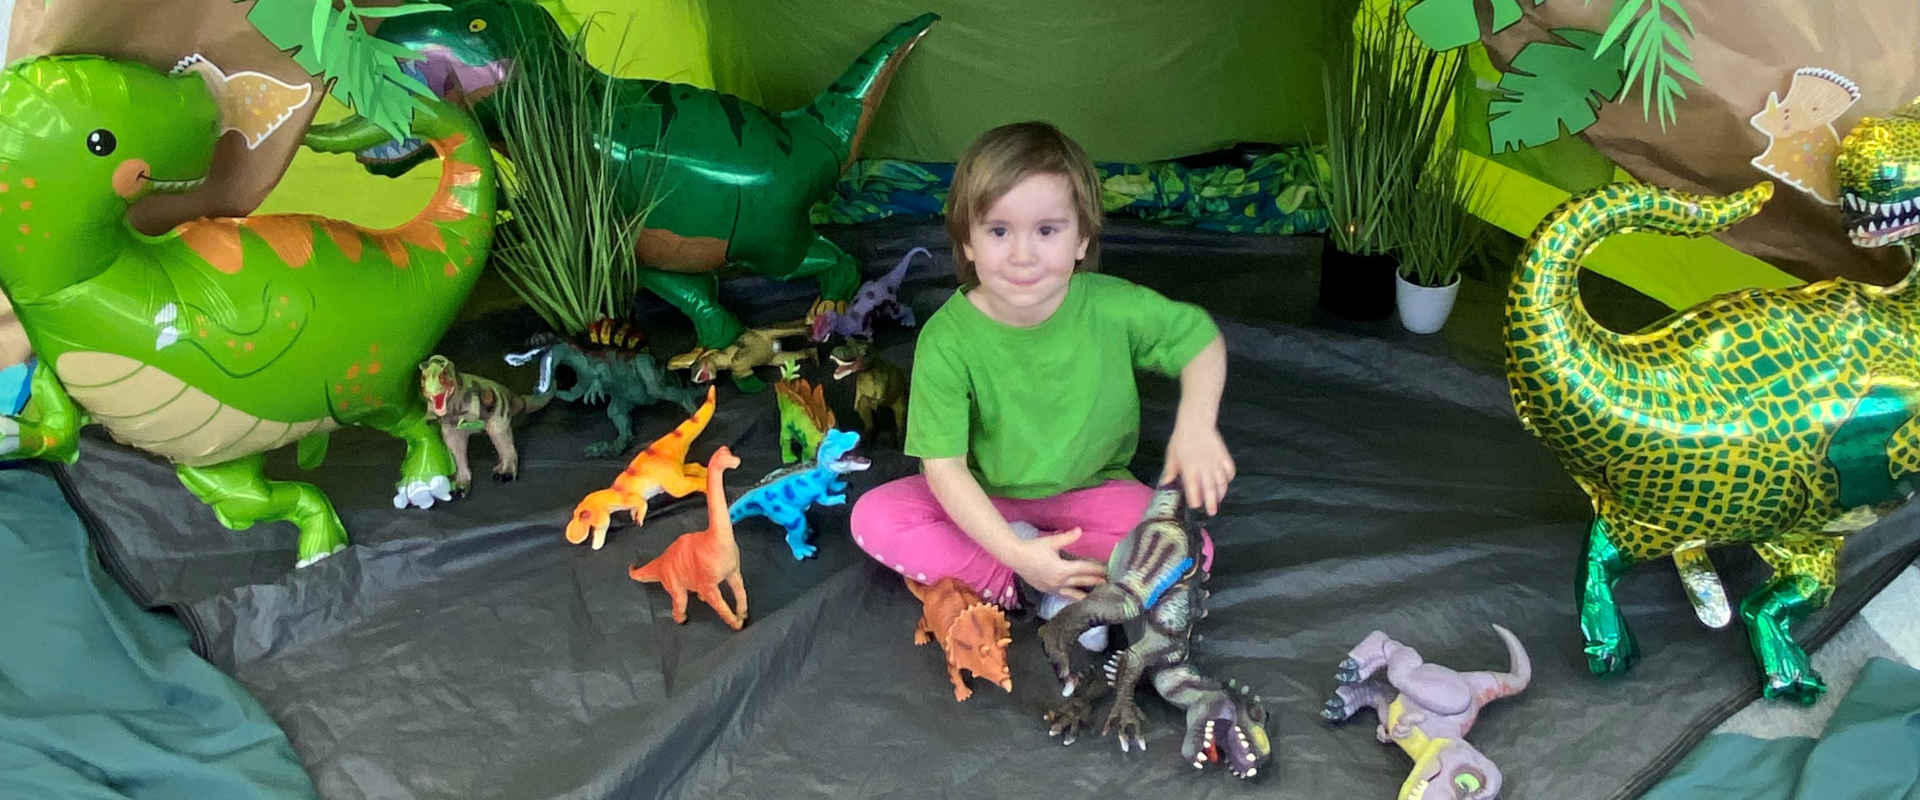 Chłopczyk z zabawkami dinozaurami